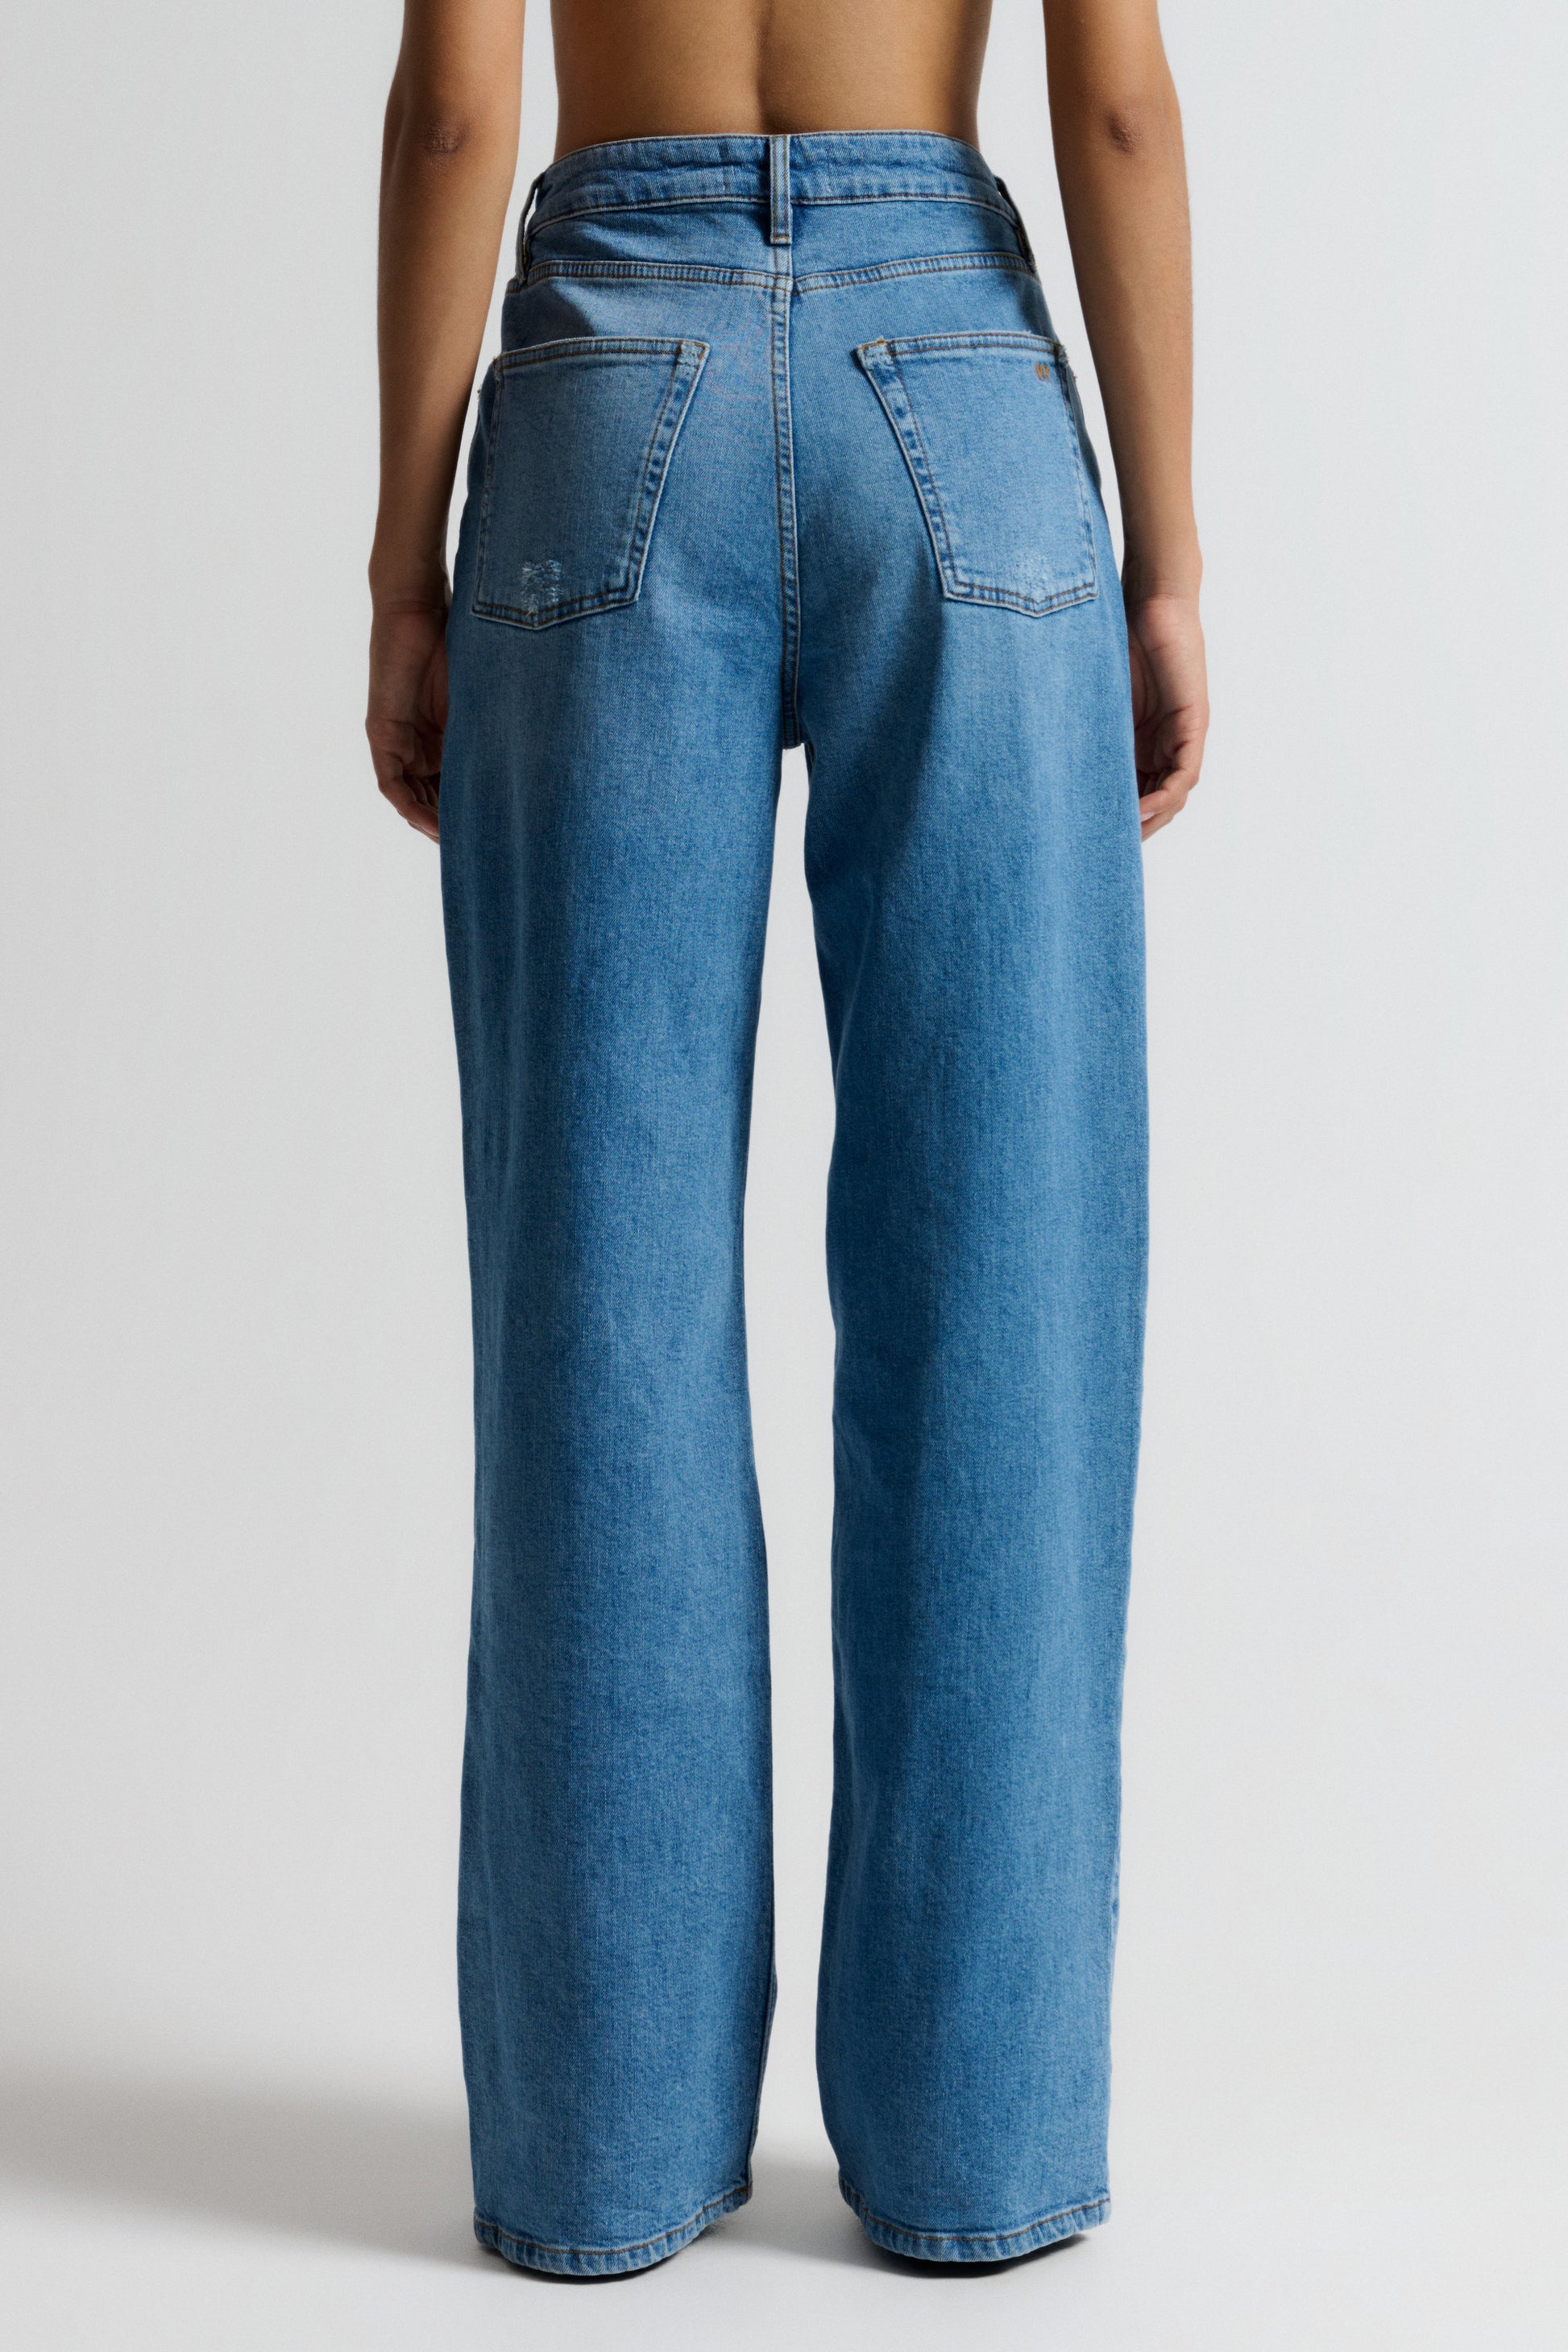 IVY Copenhagen IVY-Brooke Jeans Wash Cadiz Jeans & Pants 51 Denim Blue